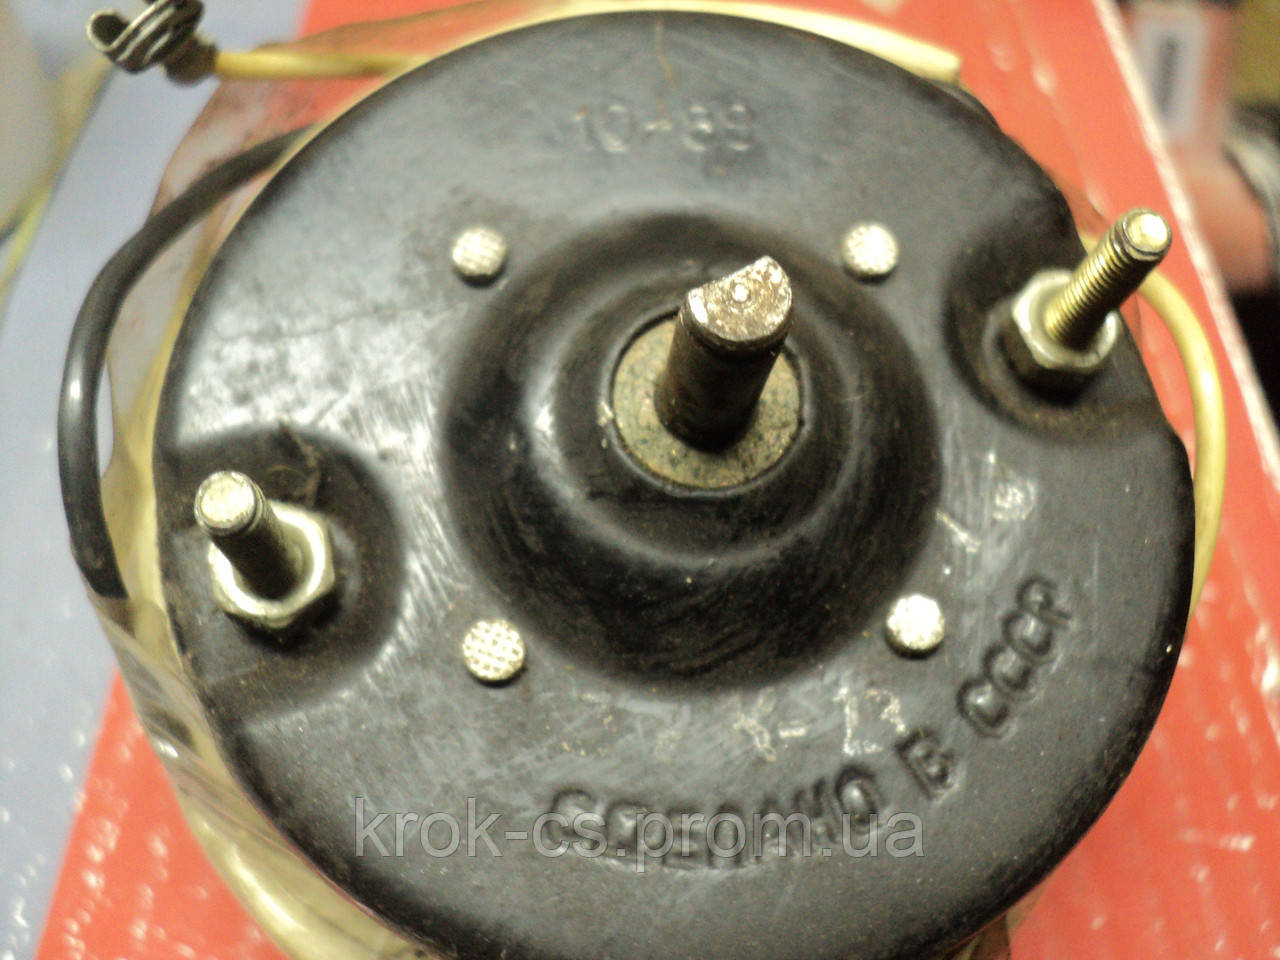 Електродвигун опалювача МЕ 223-А 12 В 12 Вт двигун трасування СРСР